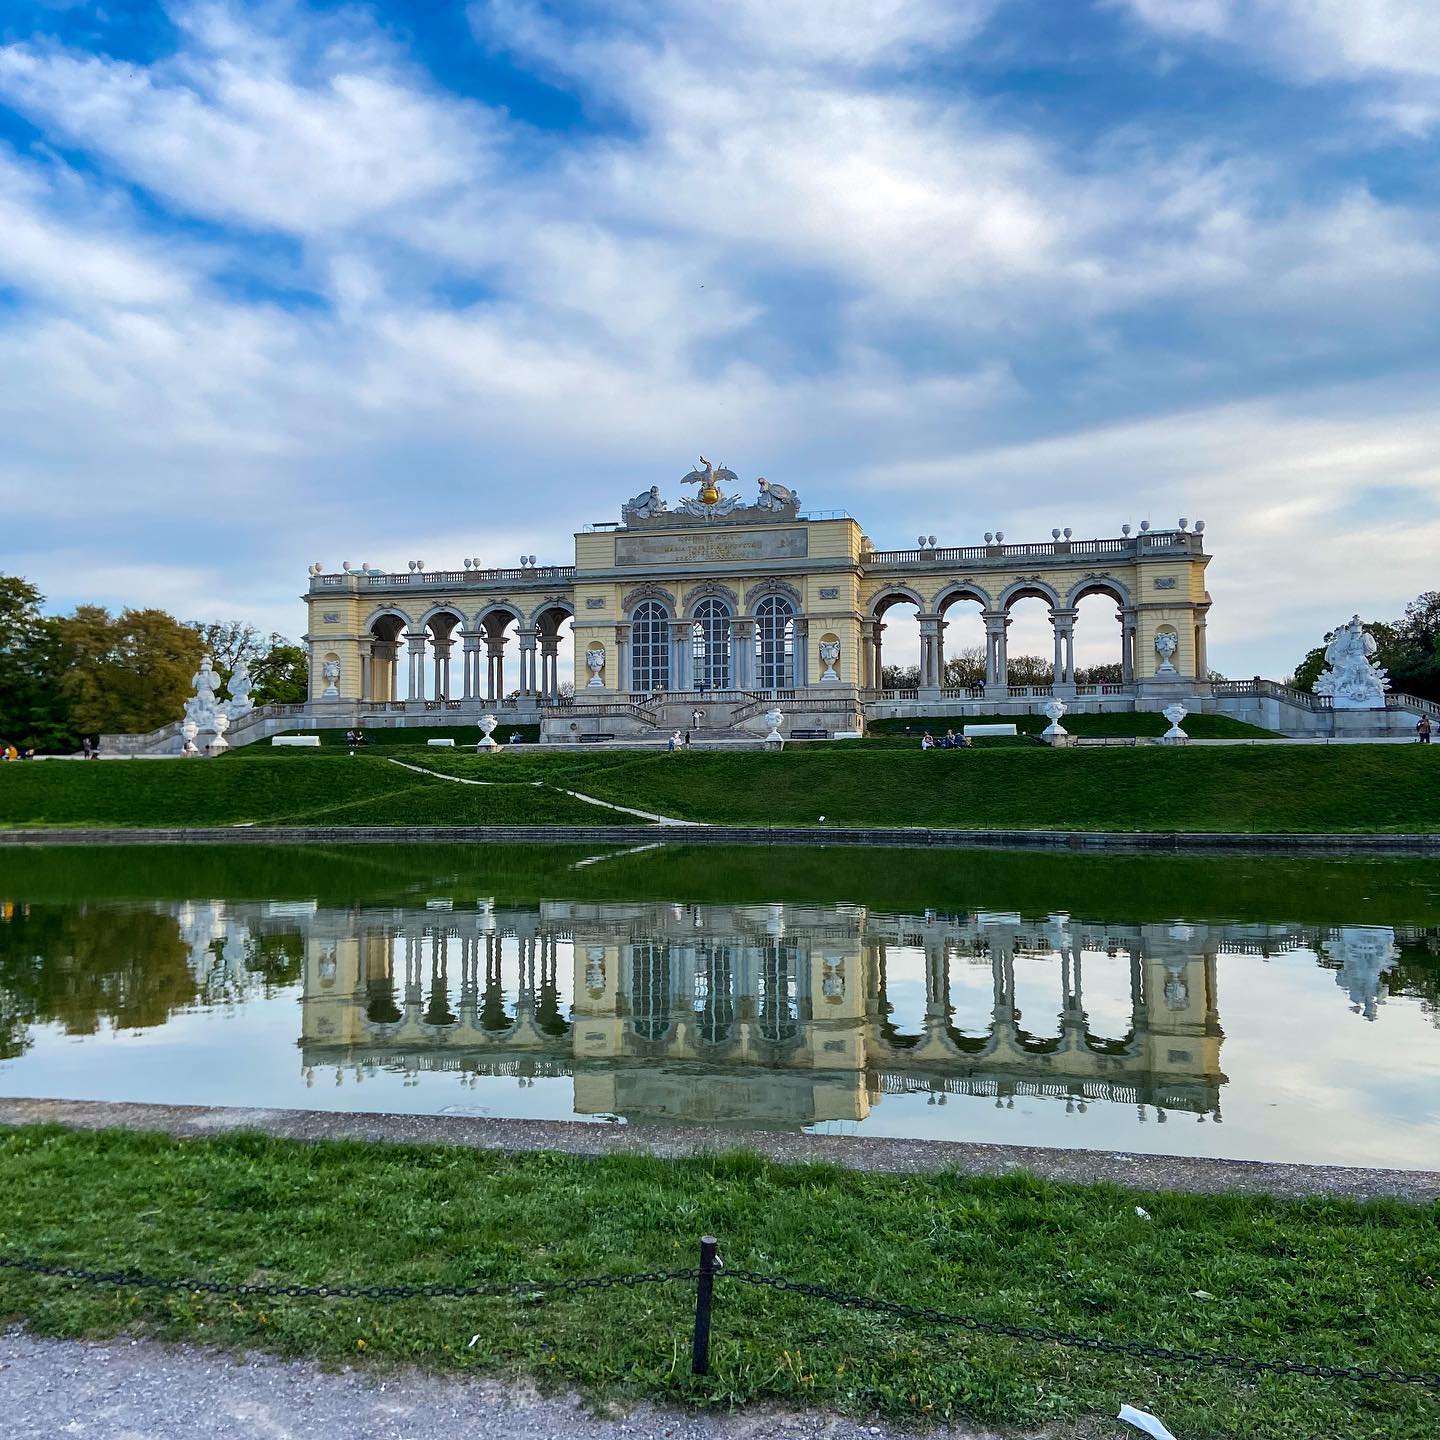 Ach ten Wiedeń ❤️. Pożegnaliśmy się dzisiaj z tym cudnym miastem.  #vienna #wien, #austria #travel #photography #wienliebe #love #österreich #happy #architecture #miastonaweekend #spring #wiosennie #gloriette #SchönbrunnWaitsForYou📸 #Schönbrunn #SchönbrunnPalace #Palace #Castle #viennanow #visitaustria #sightseeing #sights #SchönbrunnPark #SchönbrunnGardens #recreation